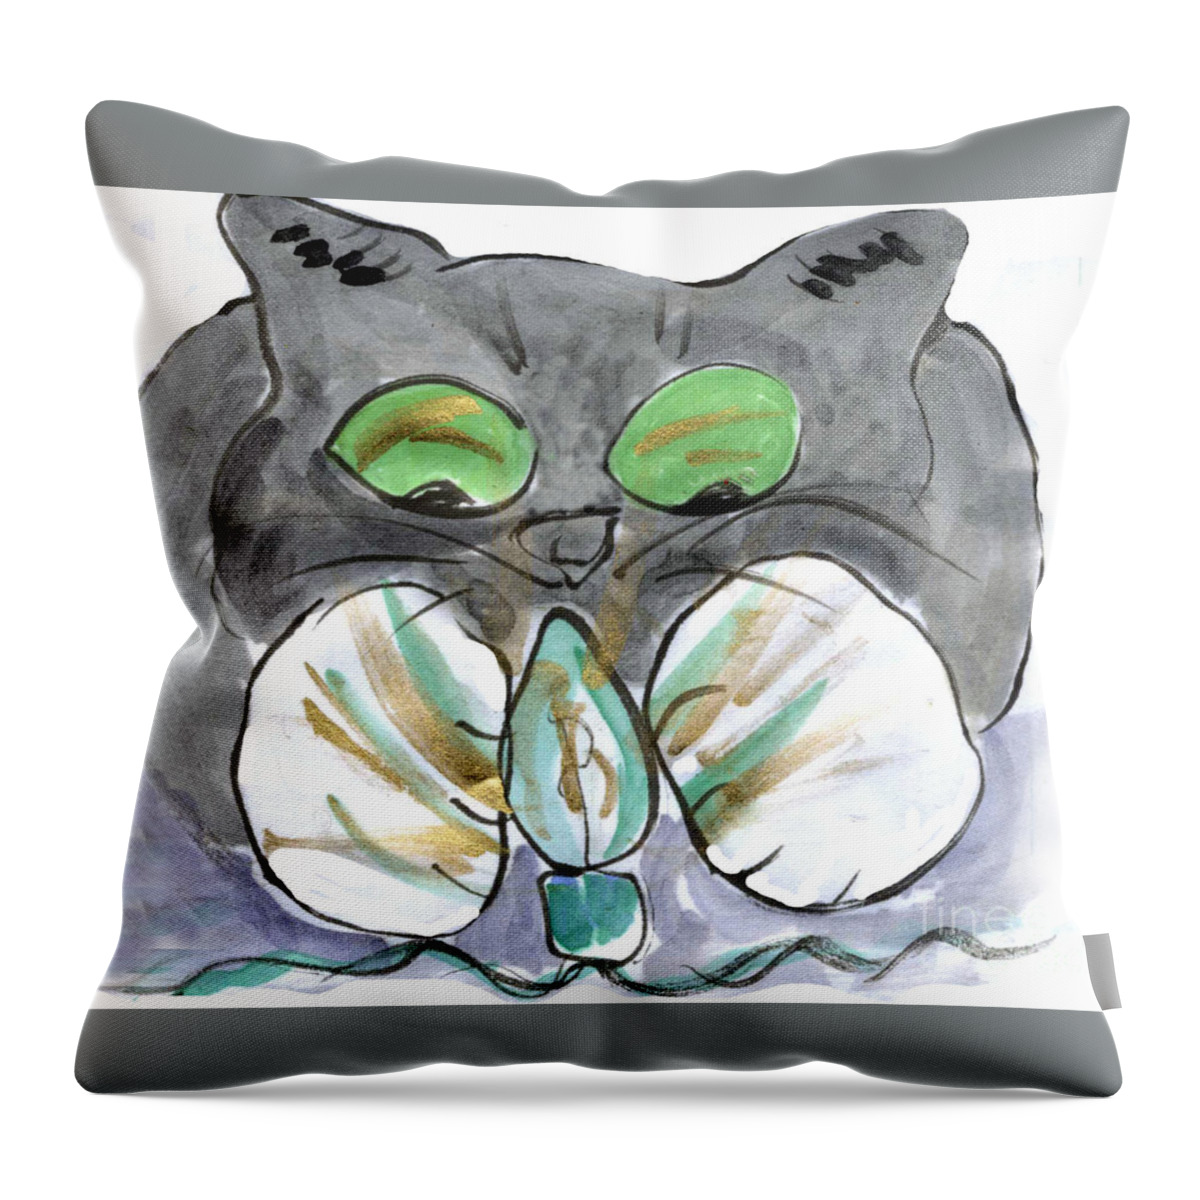 Sumi-e Throw Pillow featuring the painting Green String Light by Ellen Miffitt